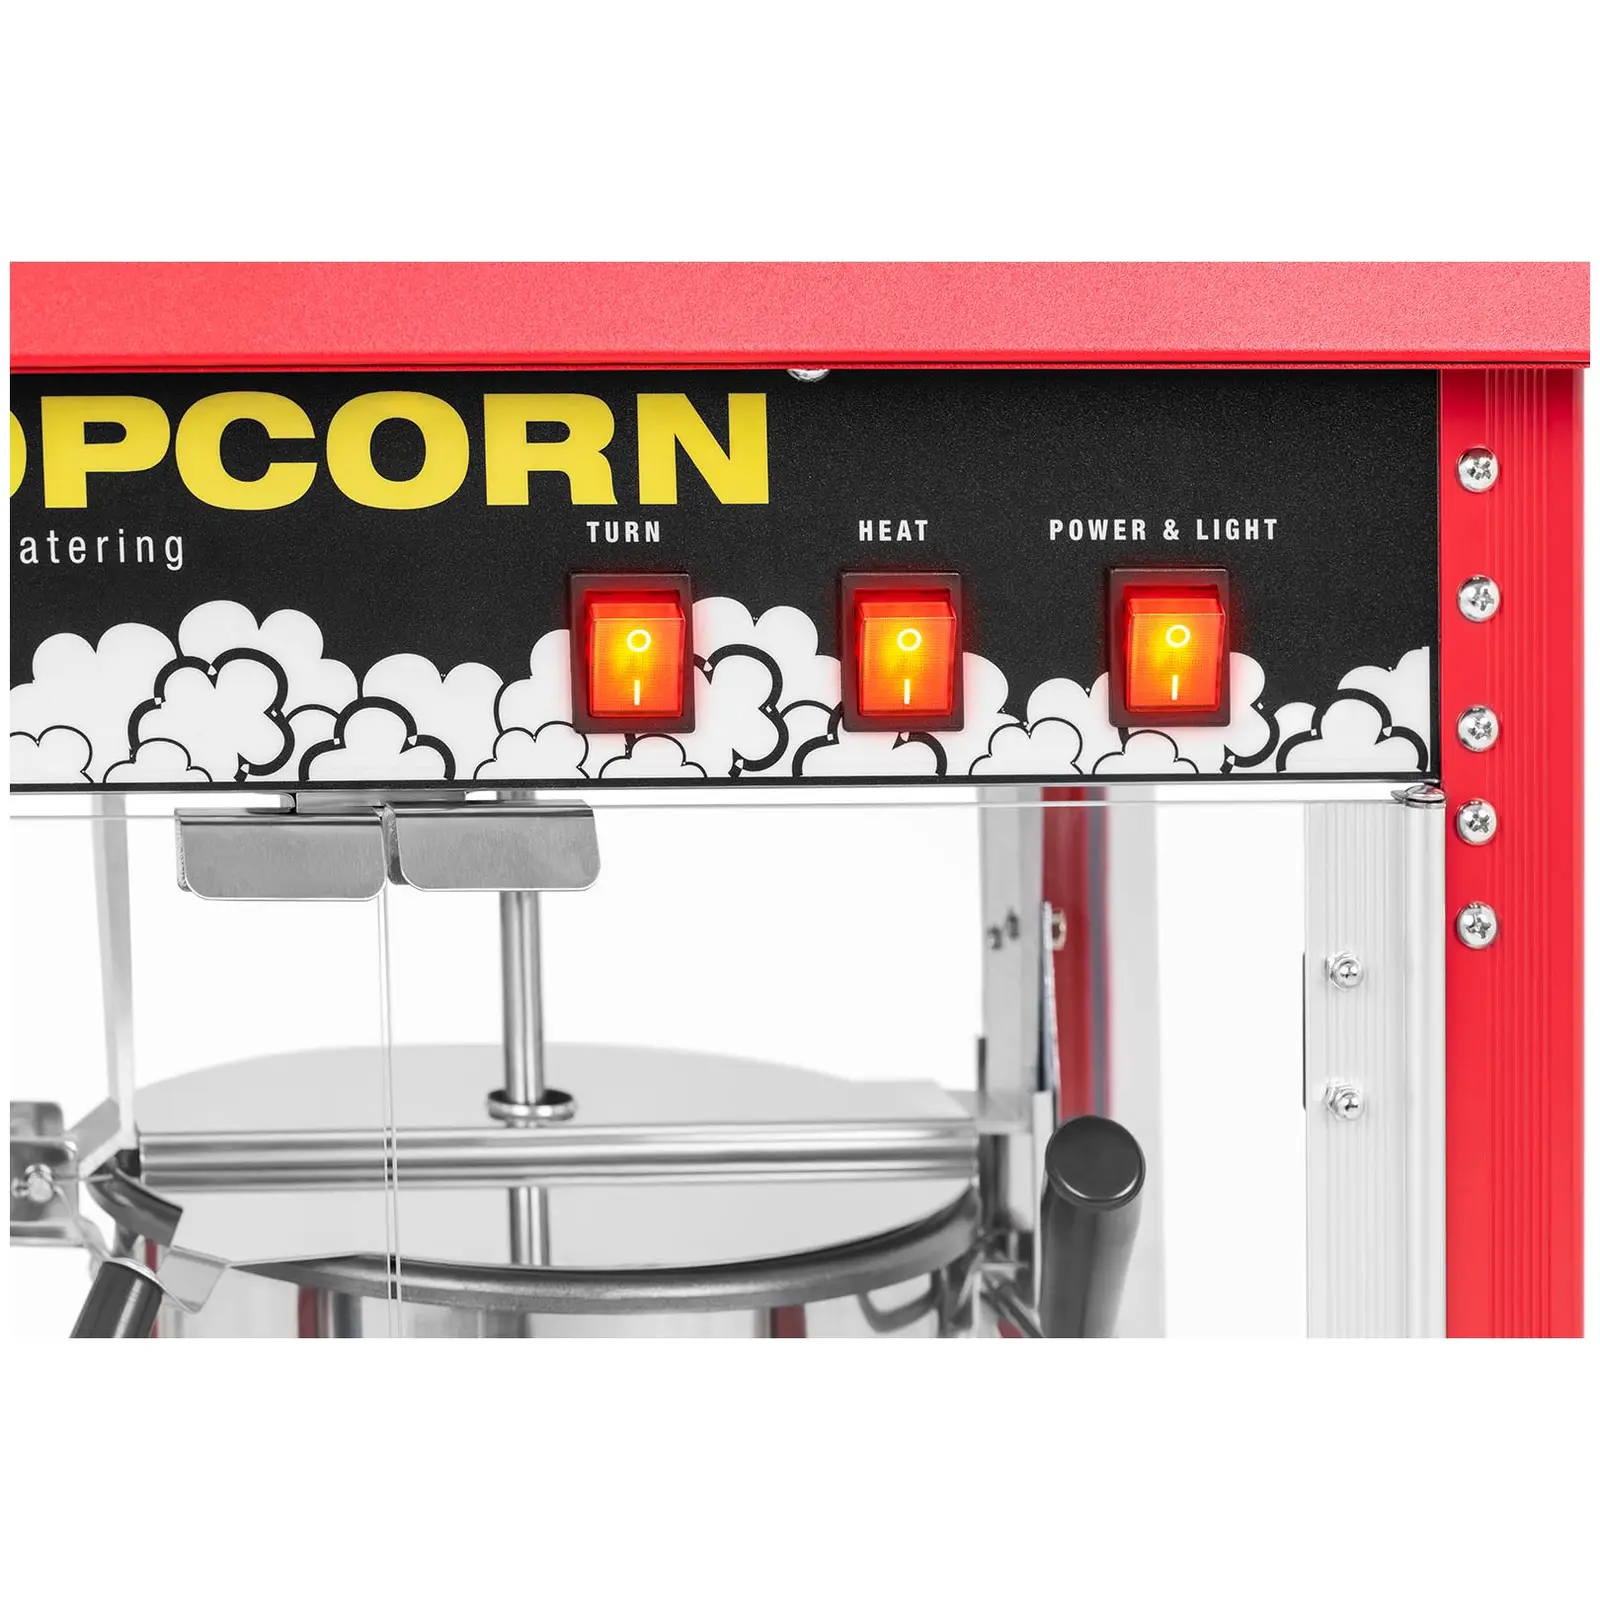 Mała maszyna do popcornu - stal nierdzewna, aluminium, szkło hartowane, powłoka teflonowa 